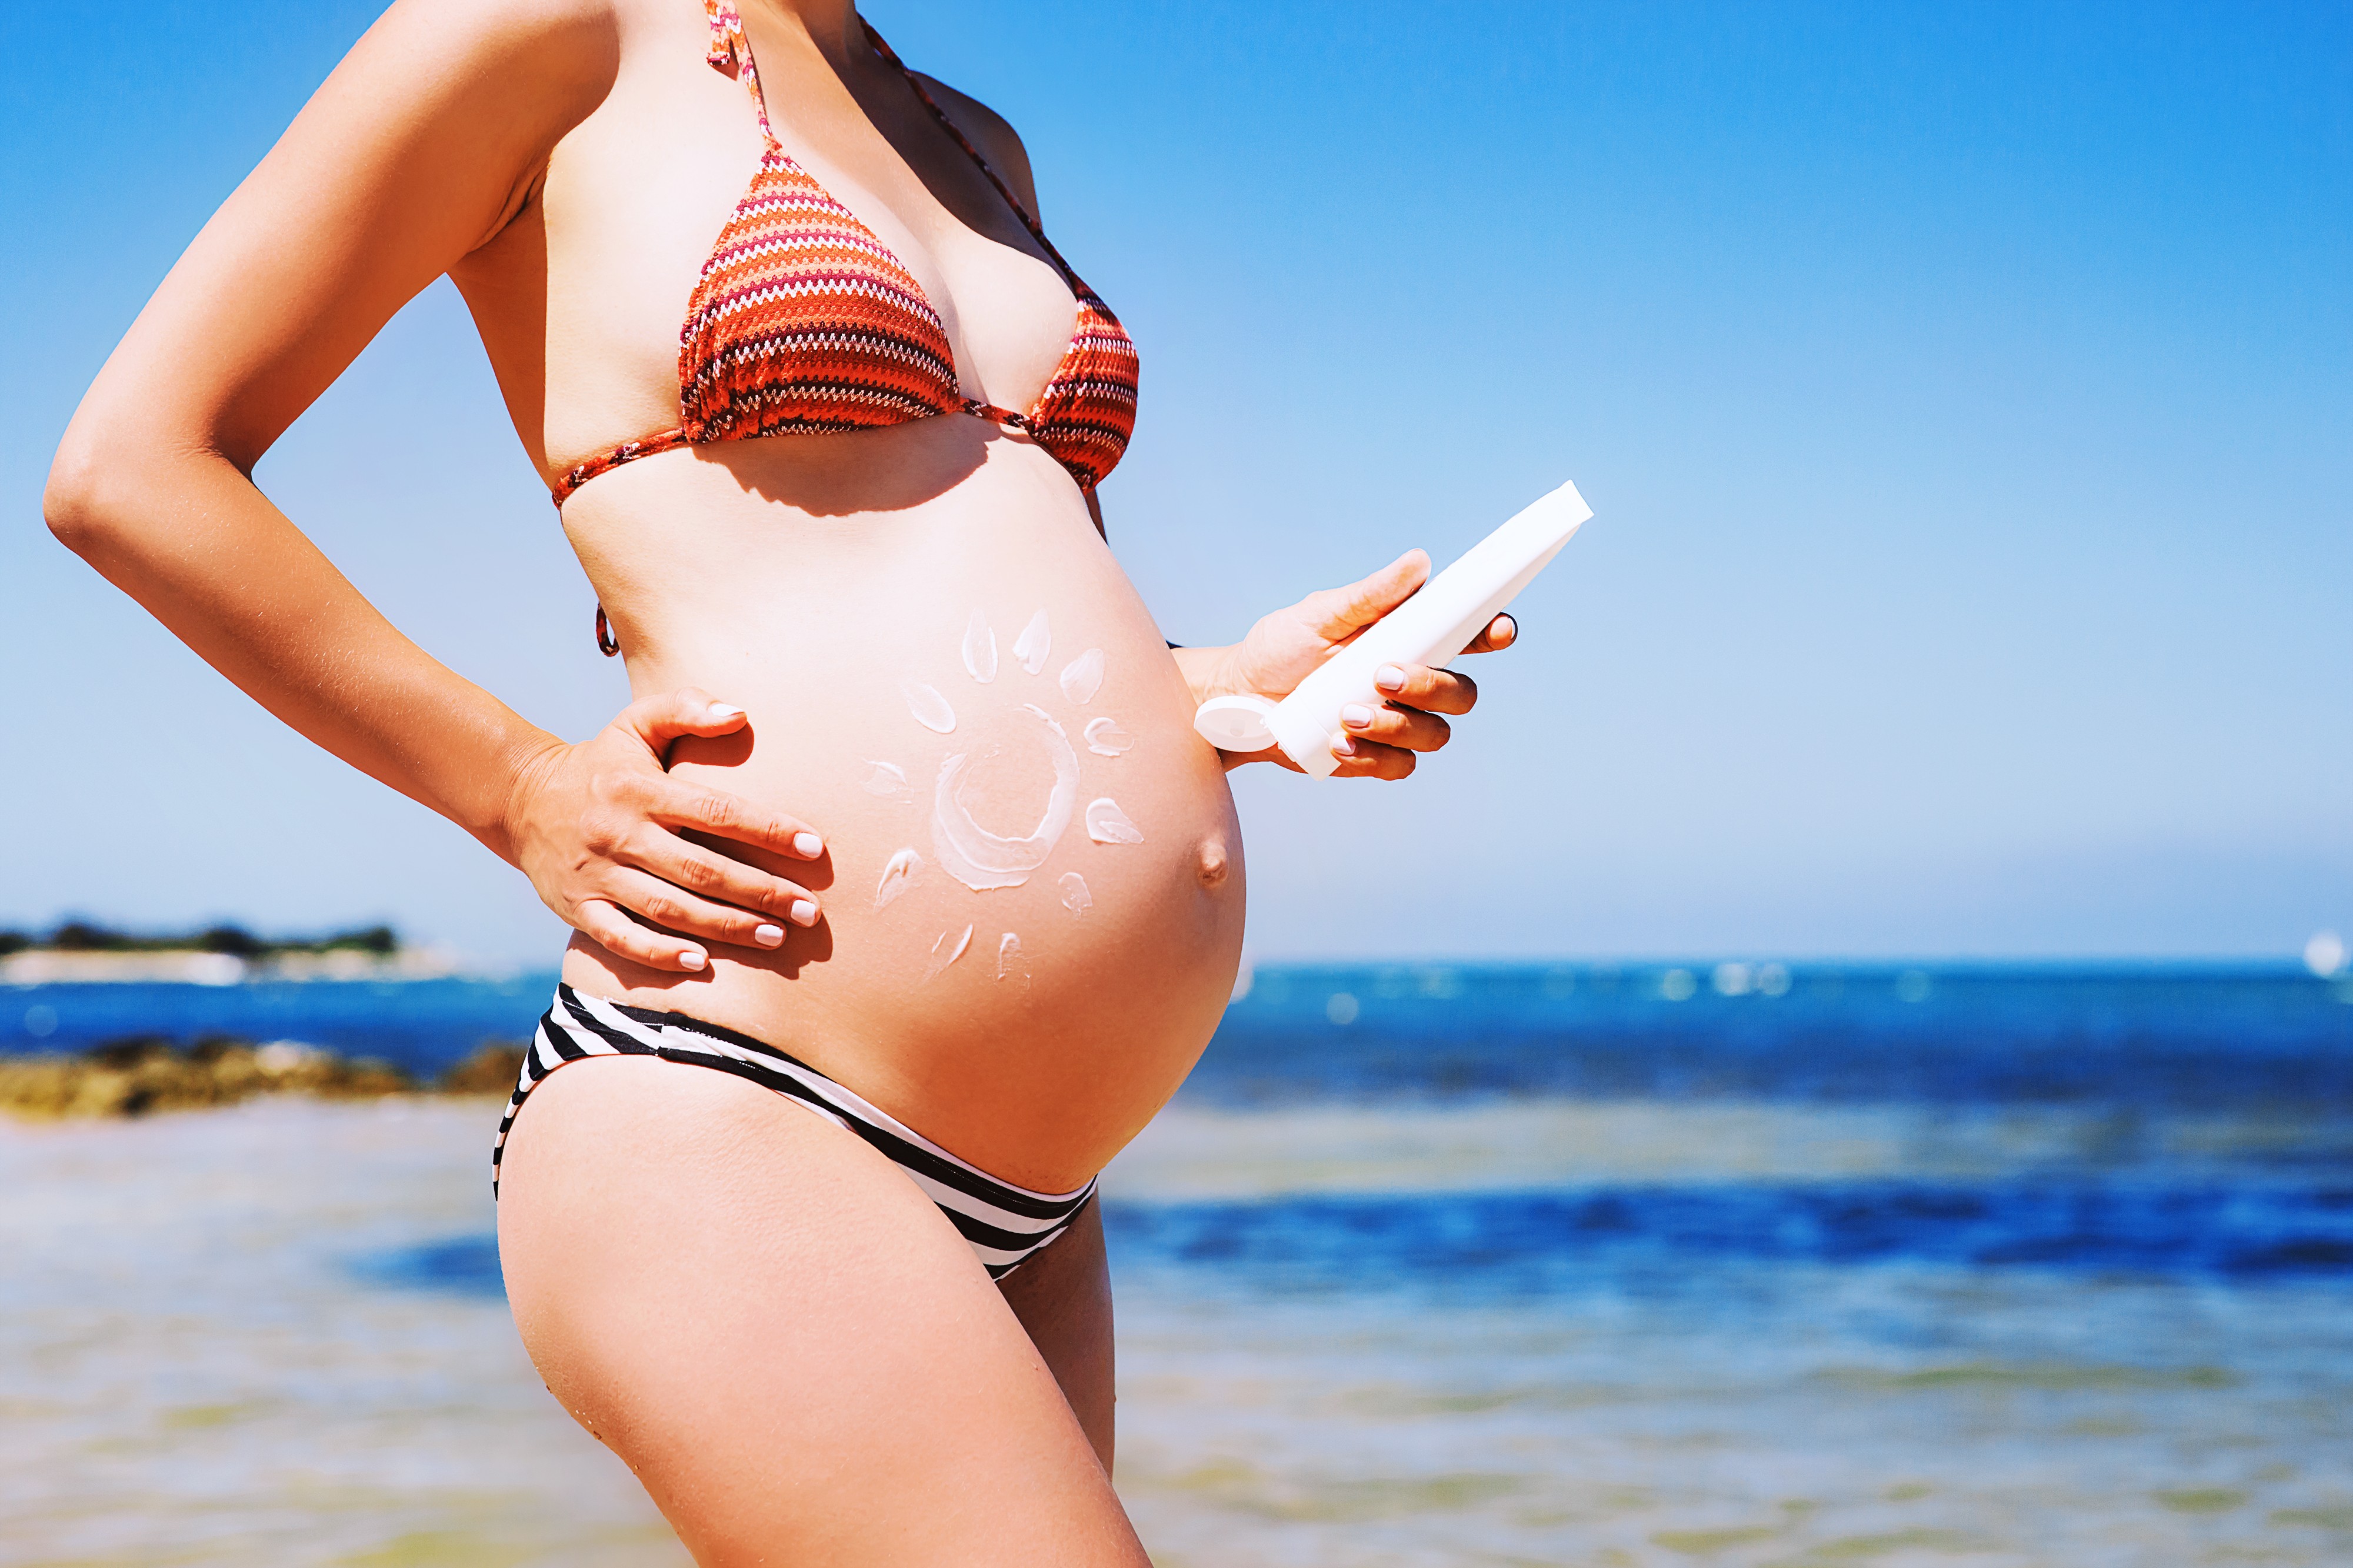 Estou grávida. Preciso trocar meu protetor solar? (Foto: Getty Images)